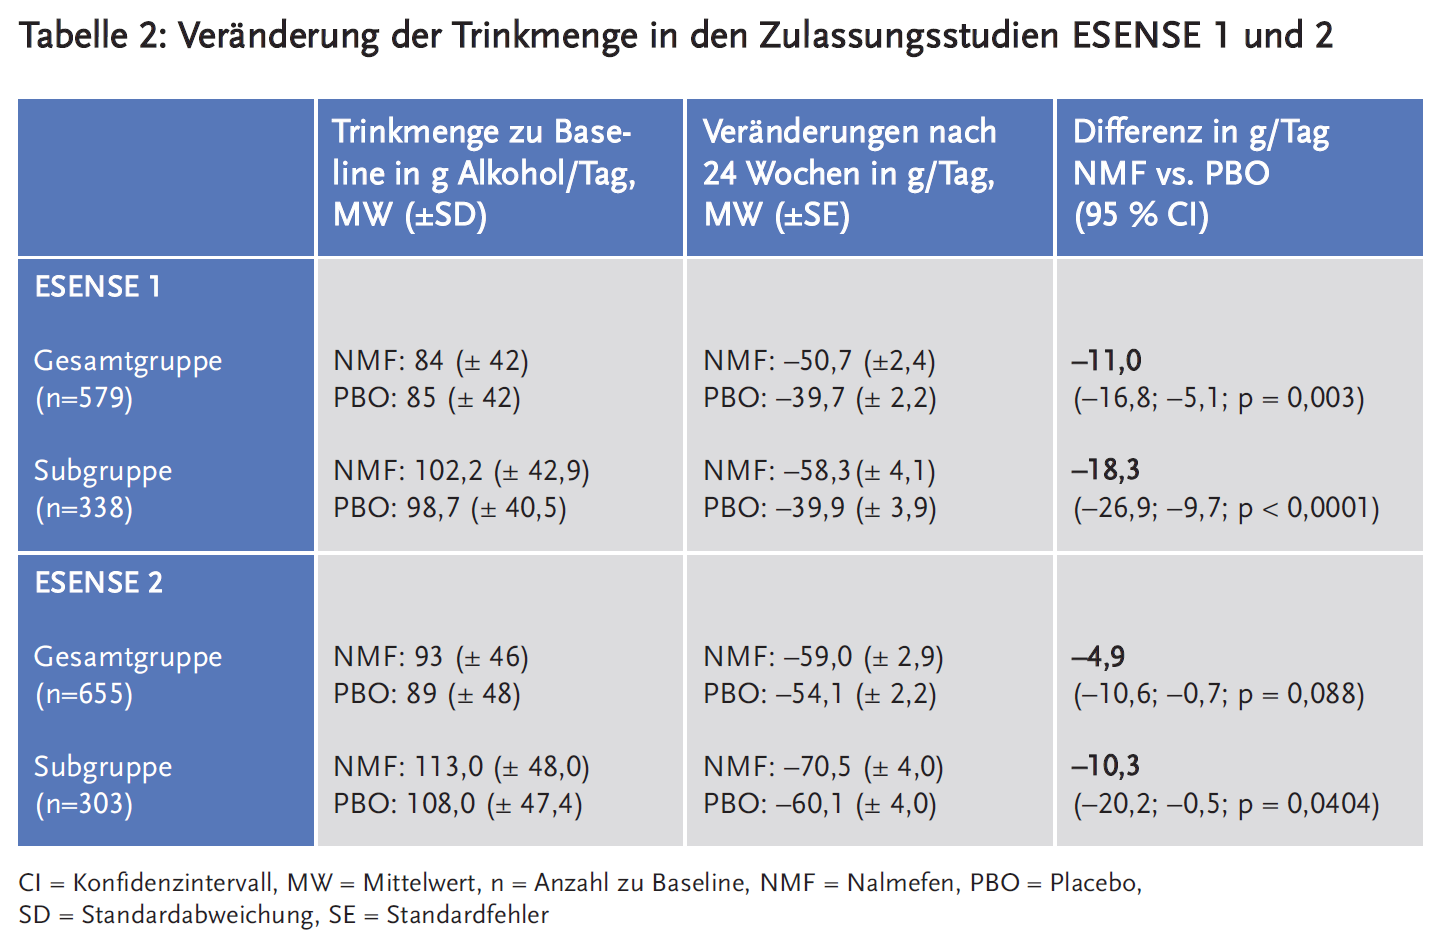 Tabelle 2: Veränderung der Trinkmenge in den Zulassungsstudien ESENSE 1 und 2